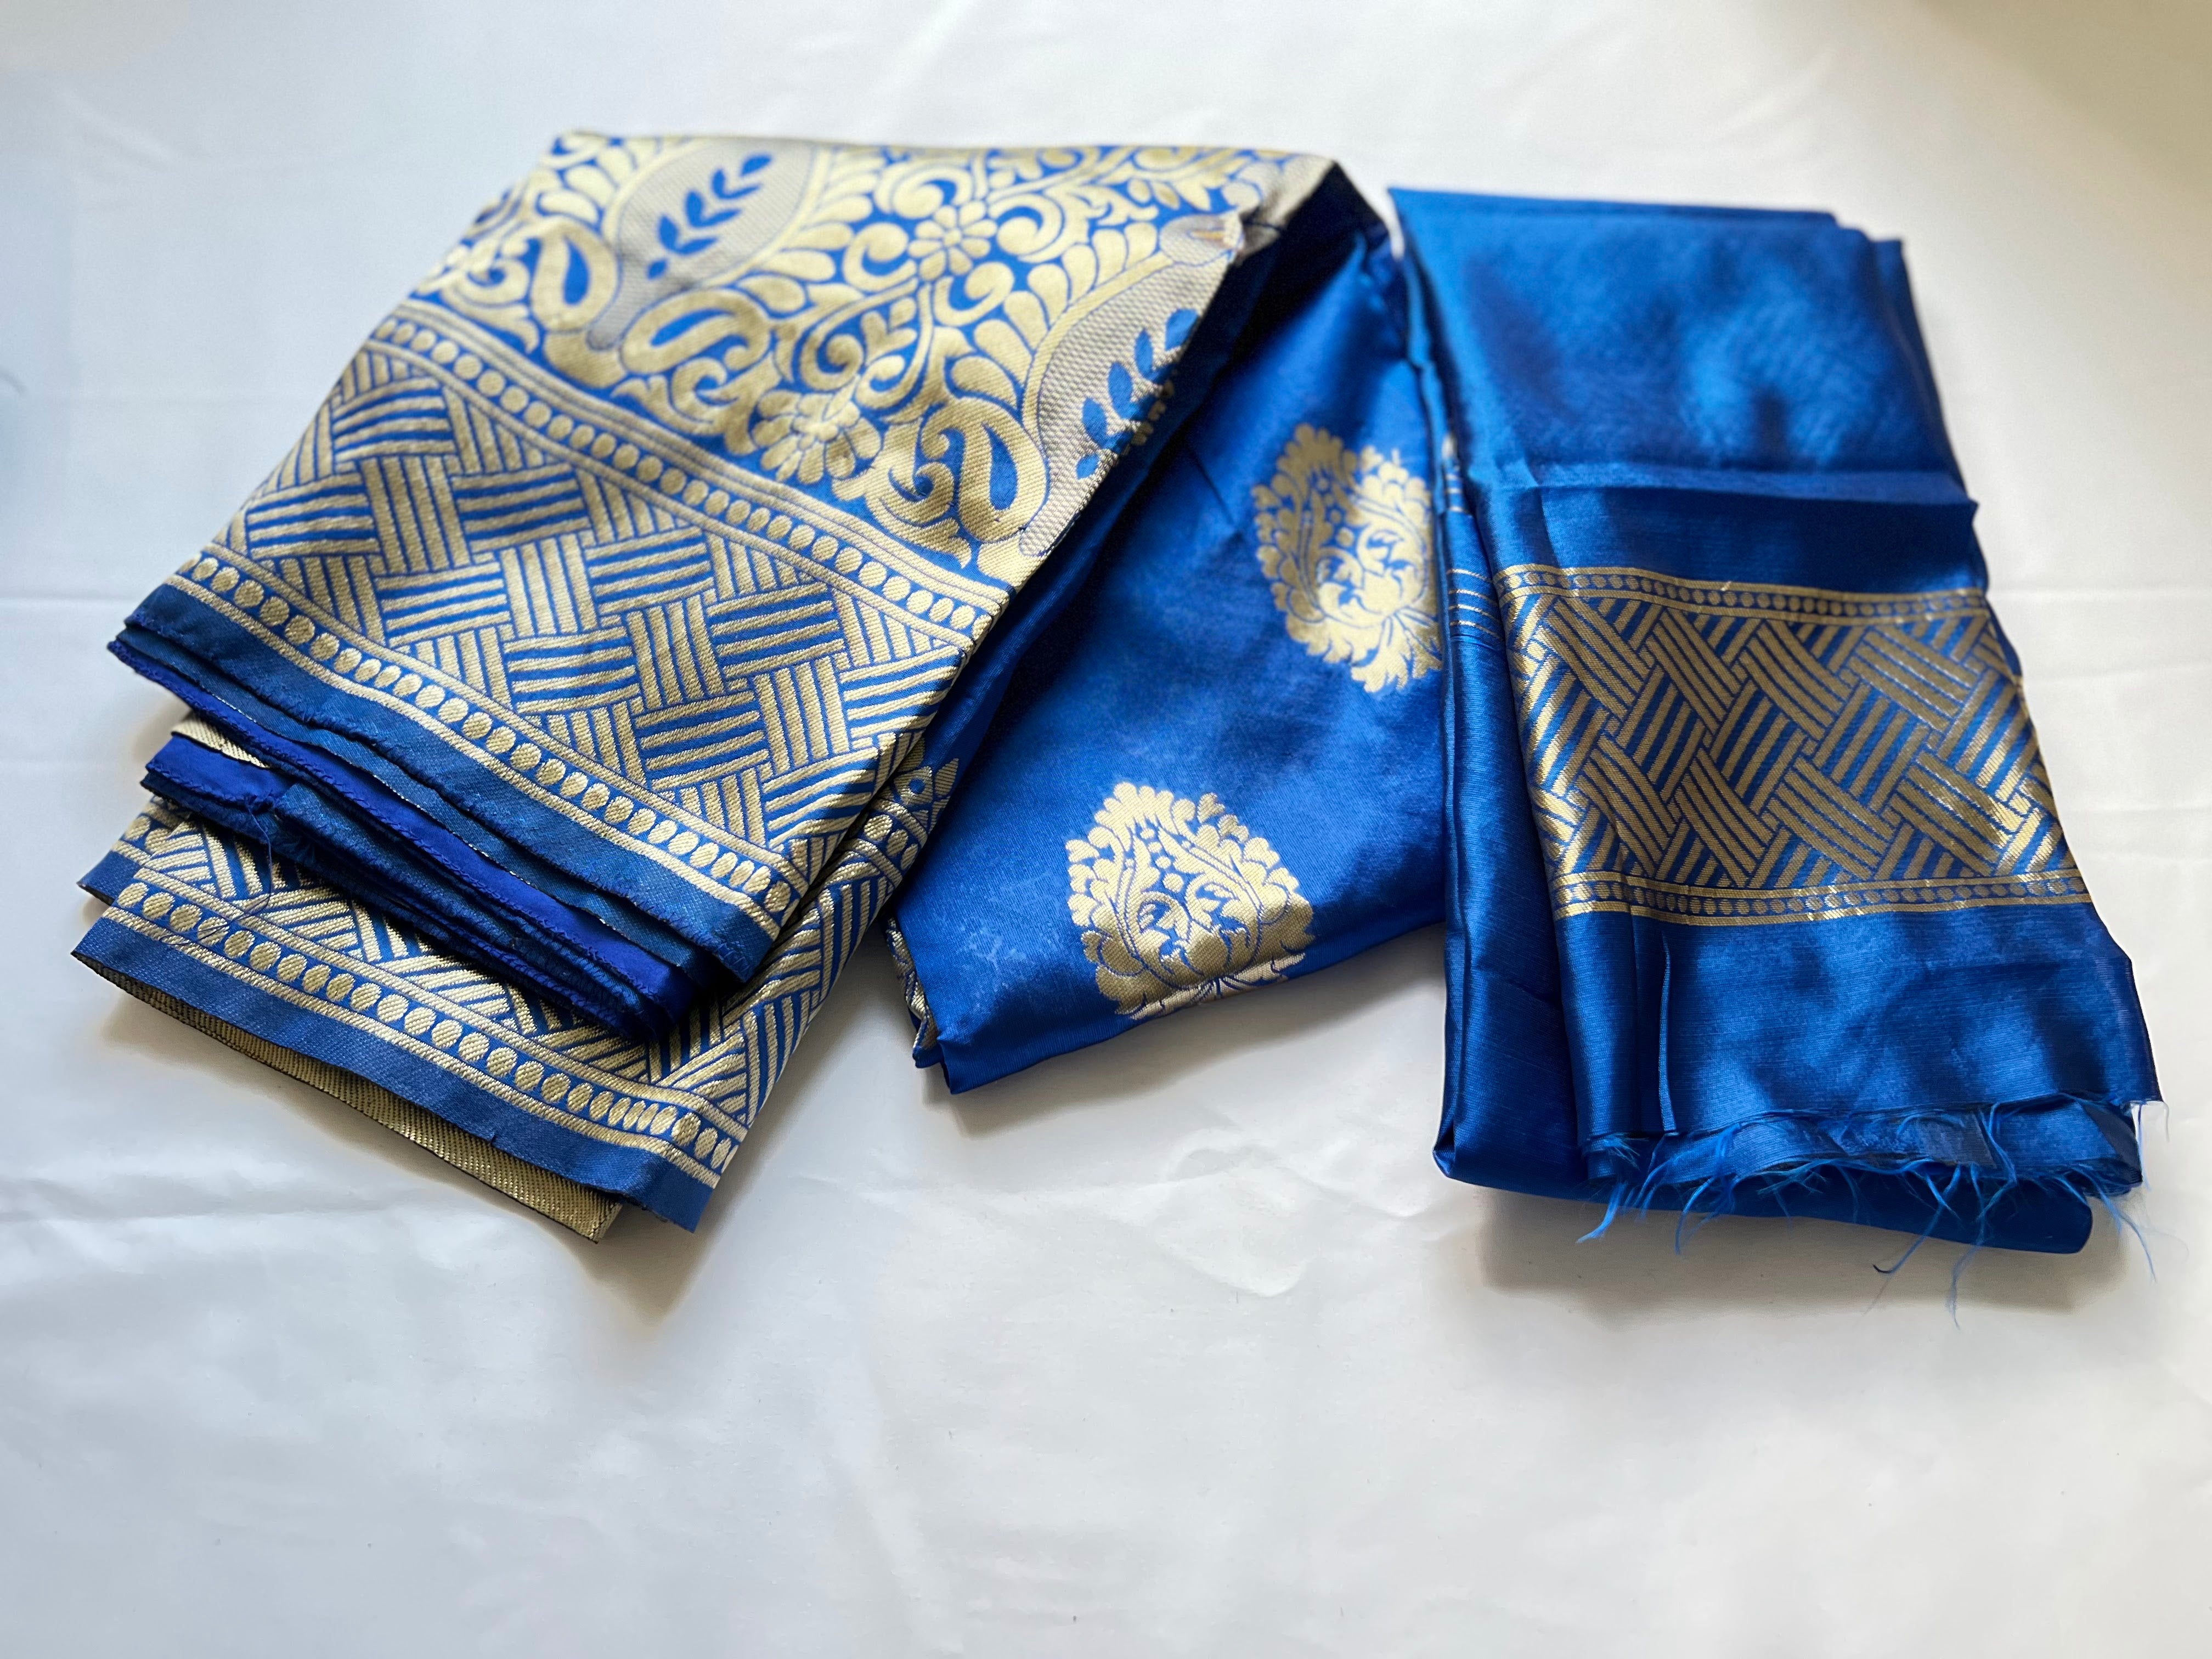 Blue Color - Banarasi Silk Saree, Gold Floral Design - Light Weight